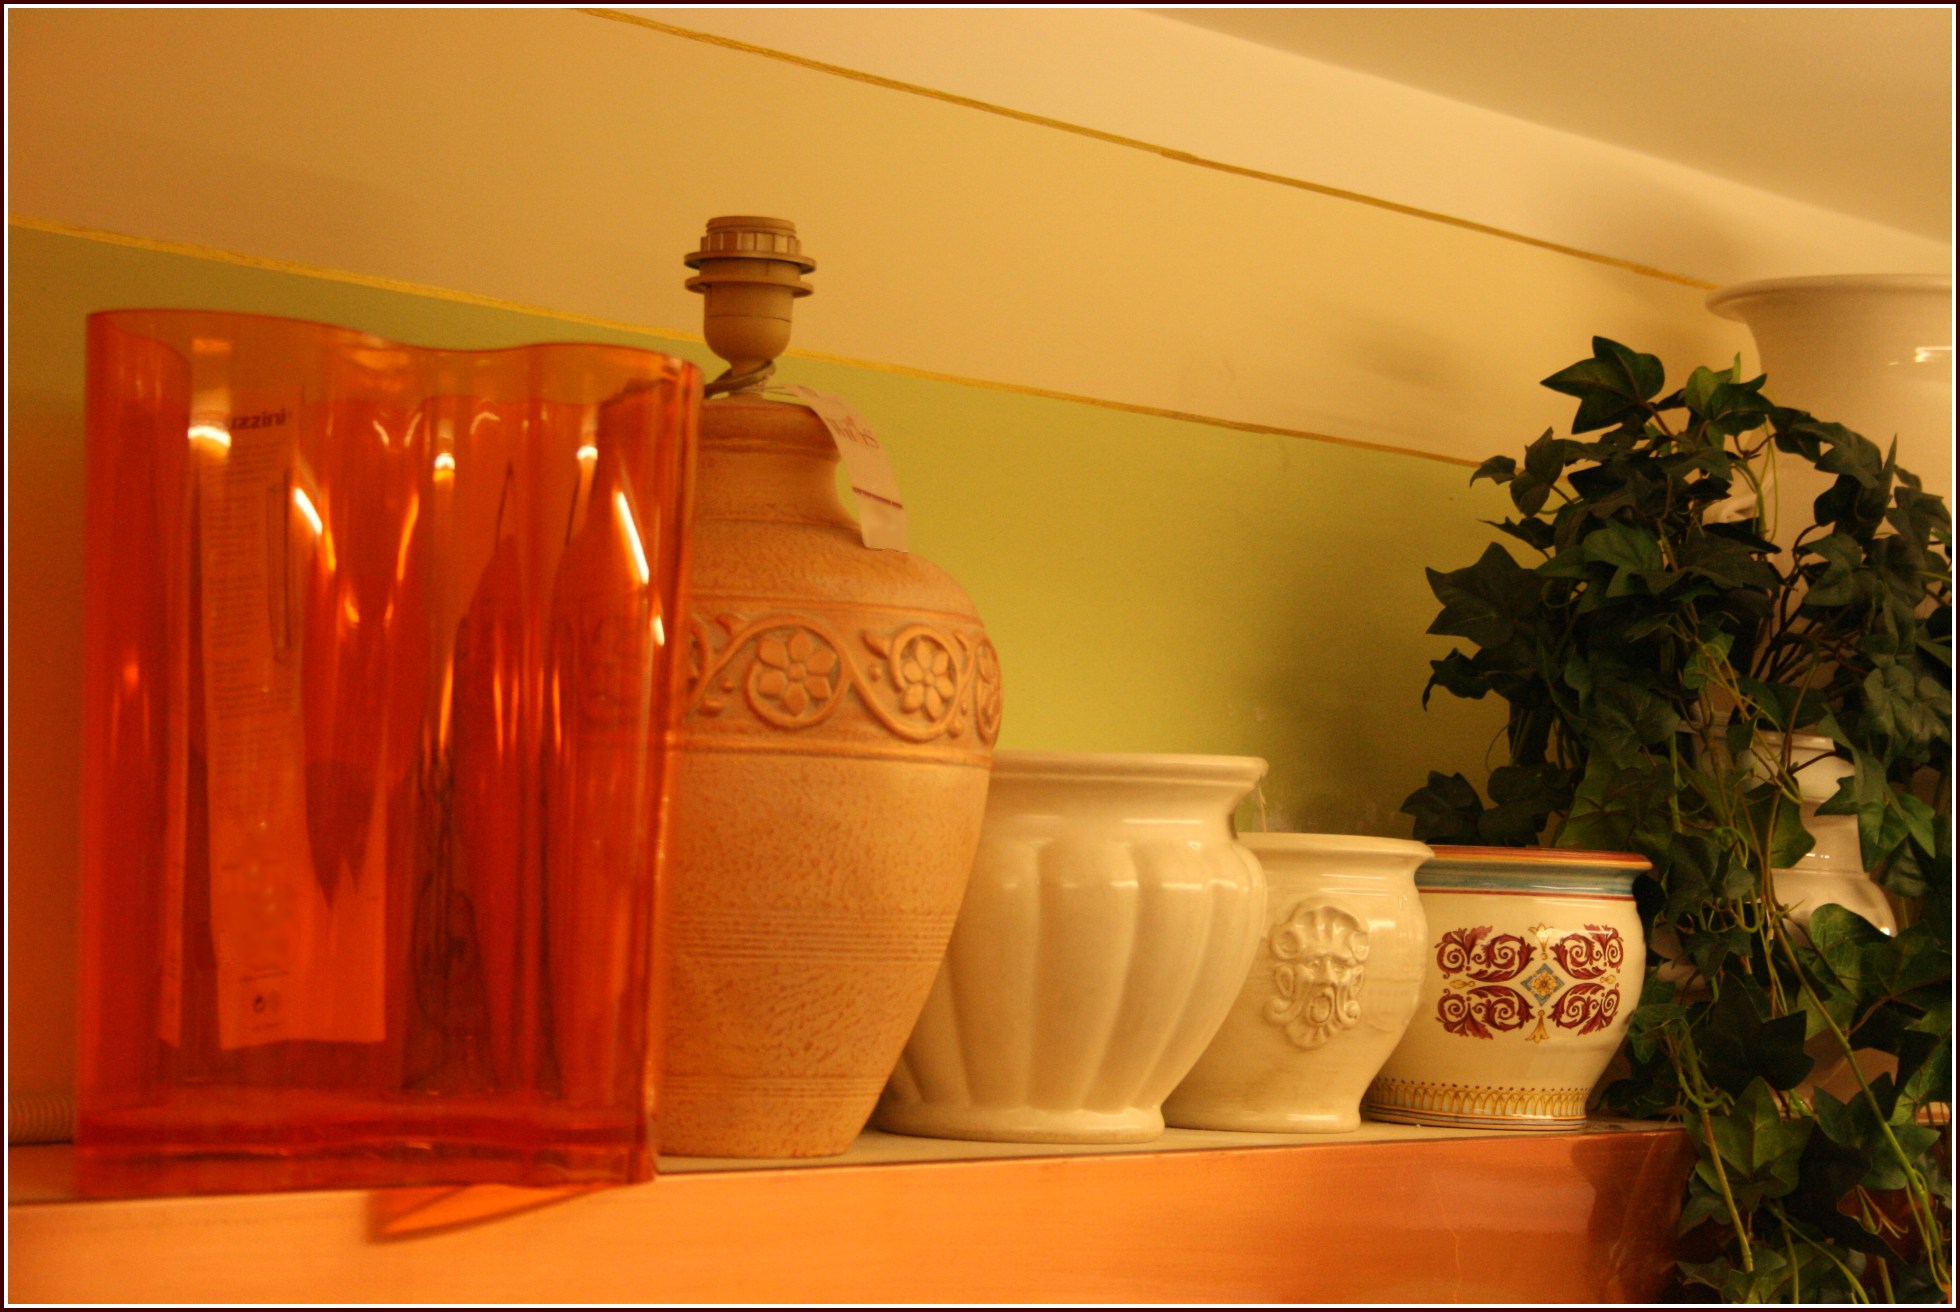 Vasi e vasetti di tutte le dimensioni e di tutti i colori, la tognana, guzzini